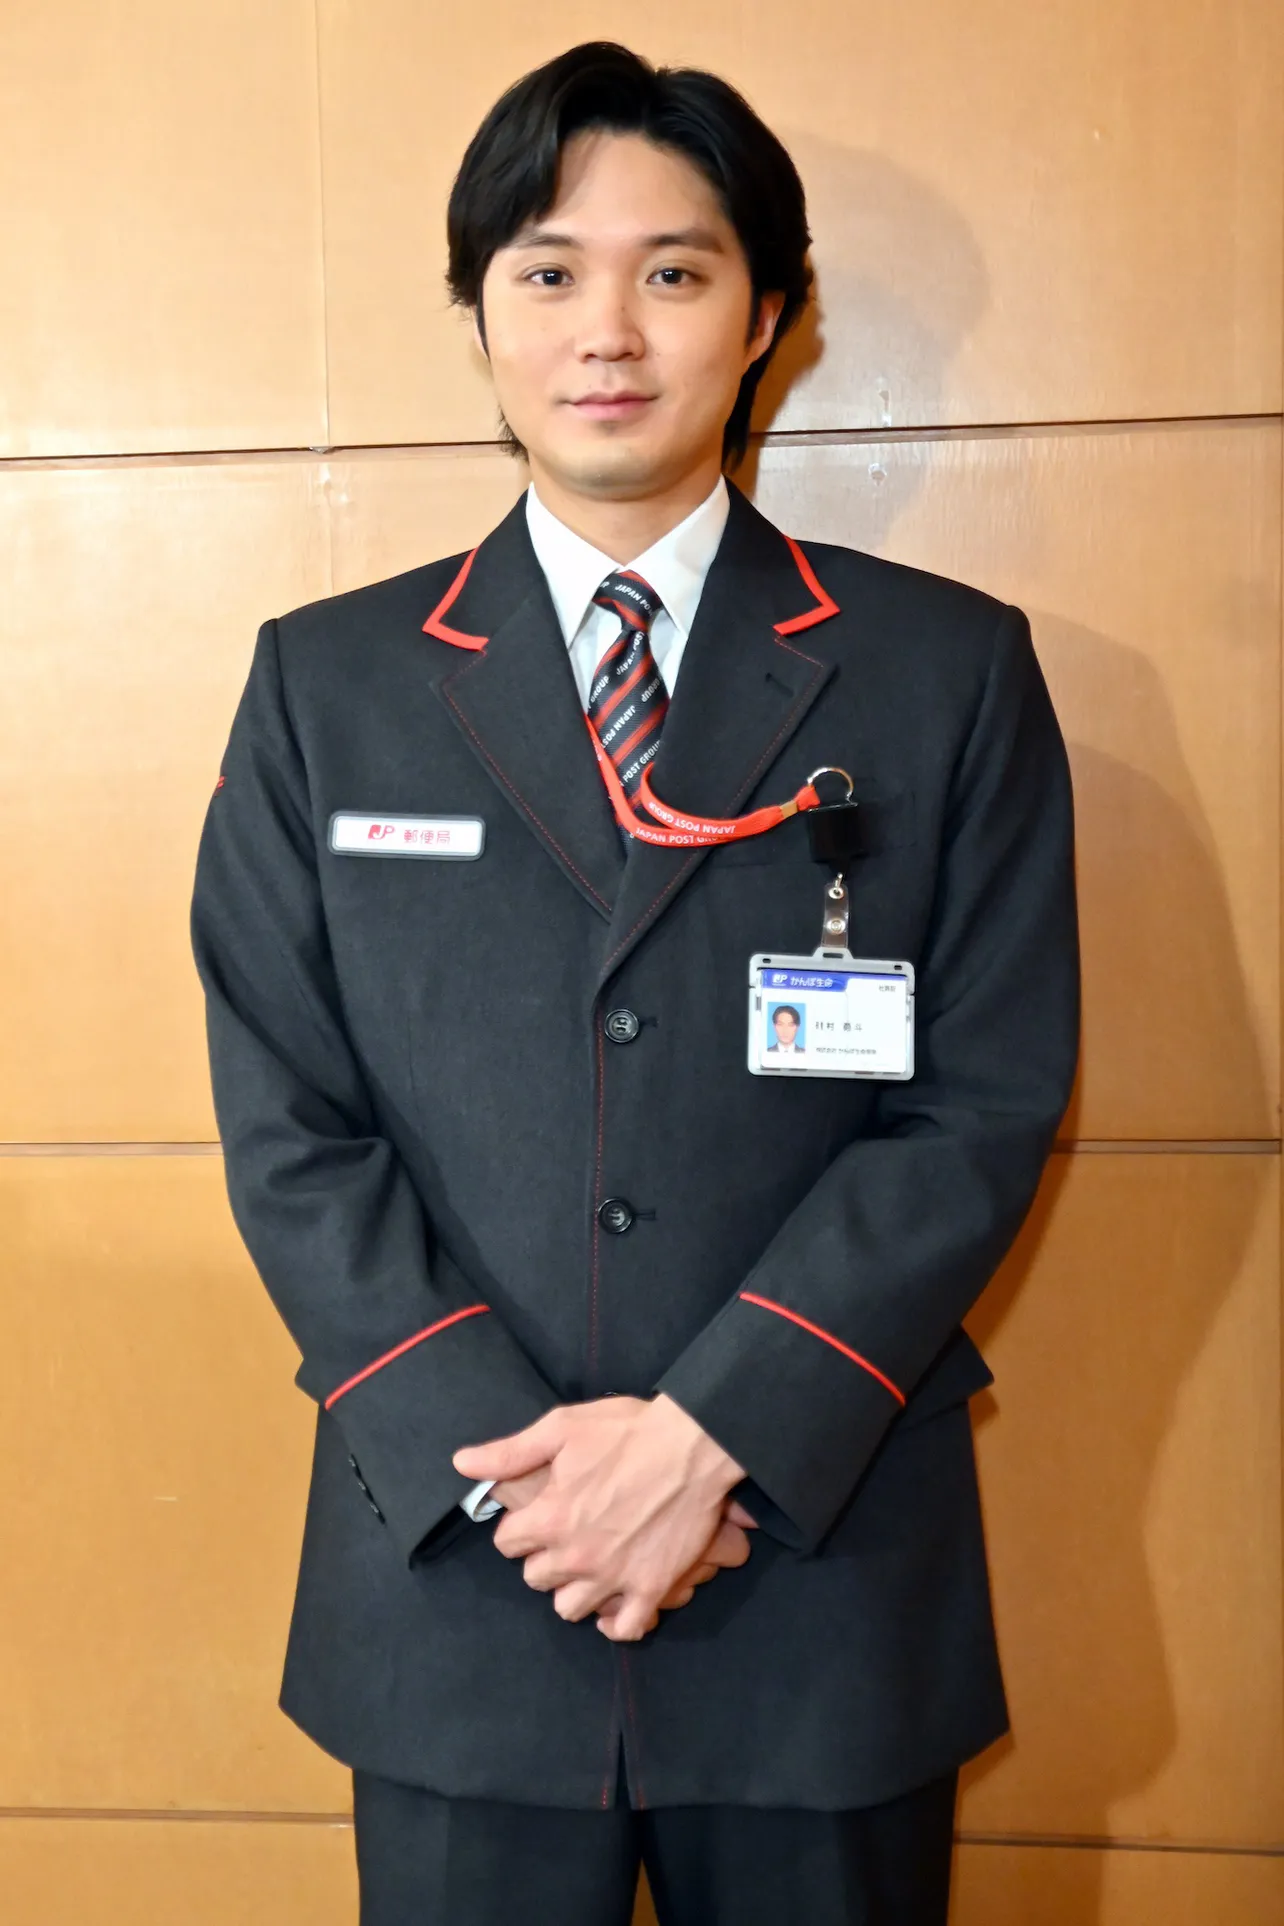 サイズを測って作られたジャストサイズの制服を着用した磯村勇斗